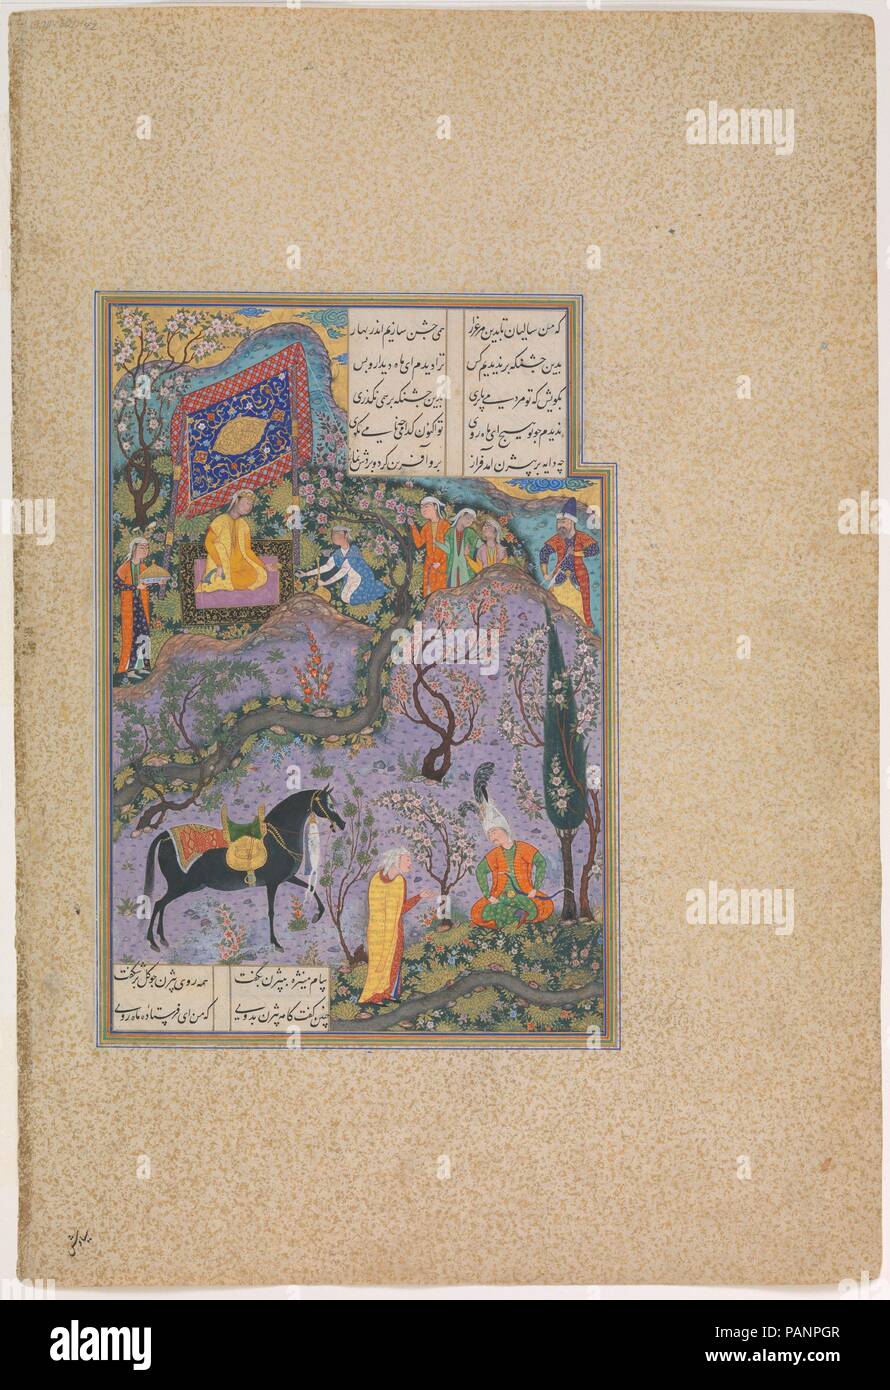 "Bizhan riceve un invito tramite Manizha dell' infermiere, folio 300v dal Shahnama (Libro dei Re) di Shah Tahmasp. Artista: dipinto attribuito a 'Abd al-Vahhab assistita da Mir Musavvir. Autore: Abu'l Qasim Firdausi (935-1020). Dimensioni: Pittura: H. 12 5/8 x W. 7 1/4 in. (H. 32.1 x W. 18.4 cm) intera pagina: H. 18 11/16 x W. 10 5/8 in. (H. 47,5 x W. 27 cm). Data: ca. 1525-30. Bizhan invidioso del compagno, Gurgin, suggerisce di frequentare un festival vicino Irman ma oltre il confine, in Turan e rapire le più belle ragazze. Bizhan entra in un boschetto da soli per spiare le ragazze, ma Manizha, daught Foto Stock